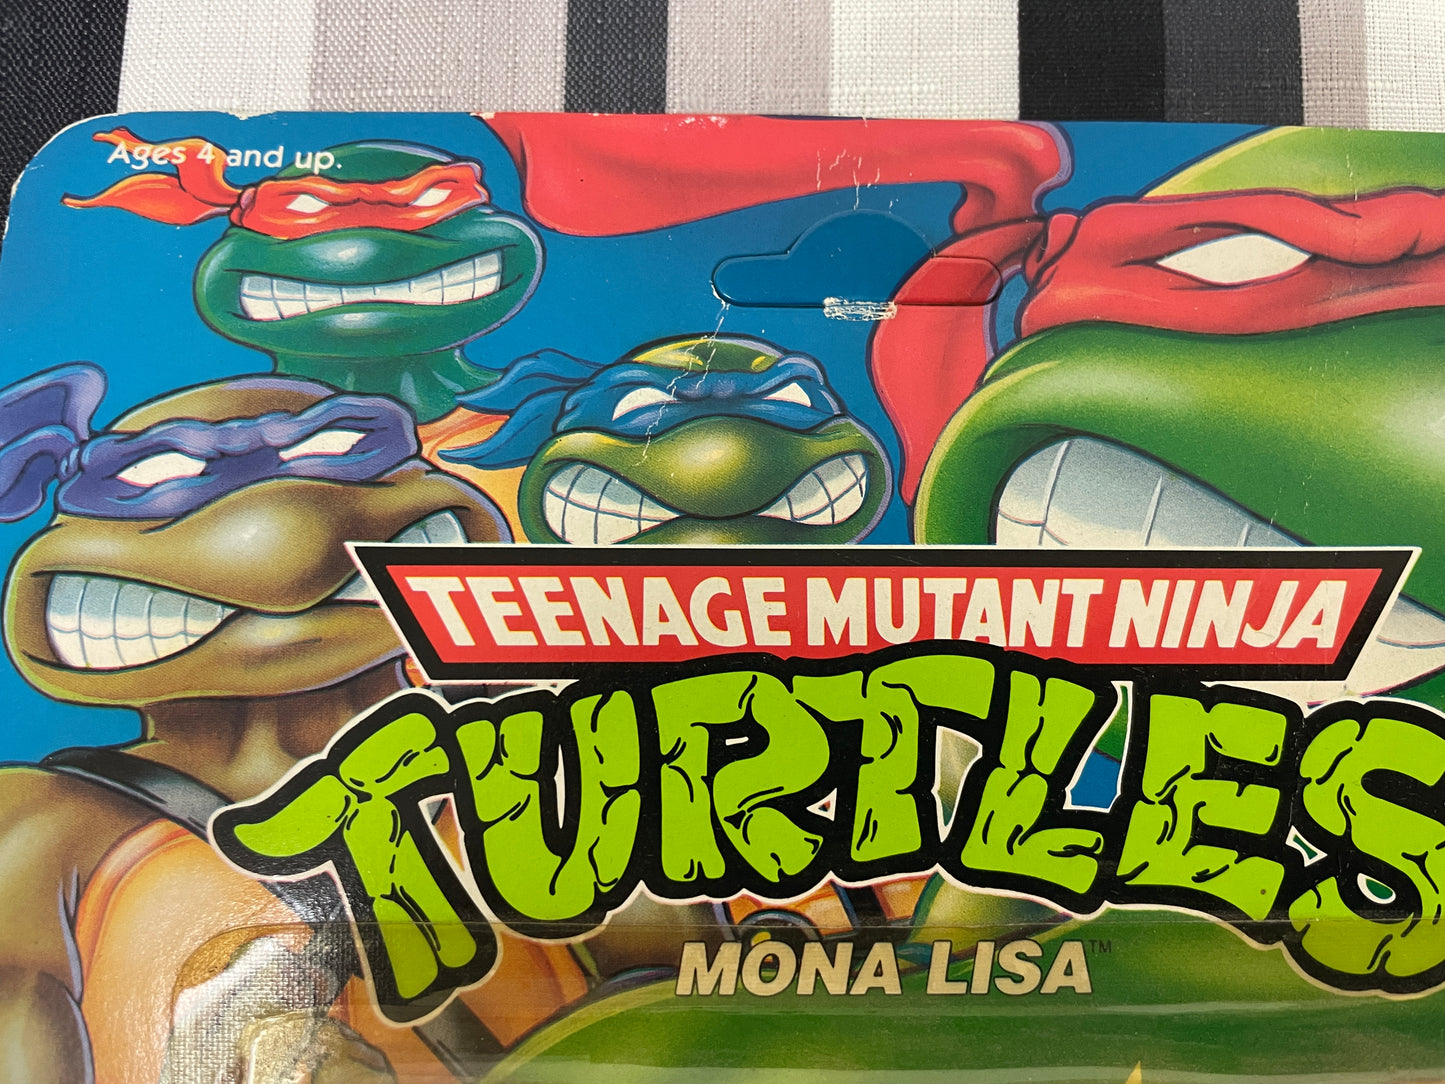 Teenage Mutant Ninja Turtles Mona Lisa Playmates 1992 Vintage